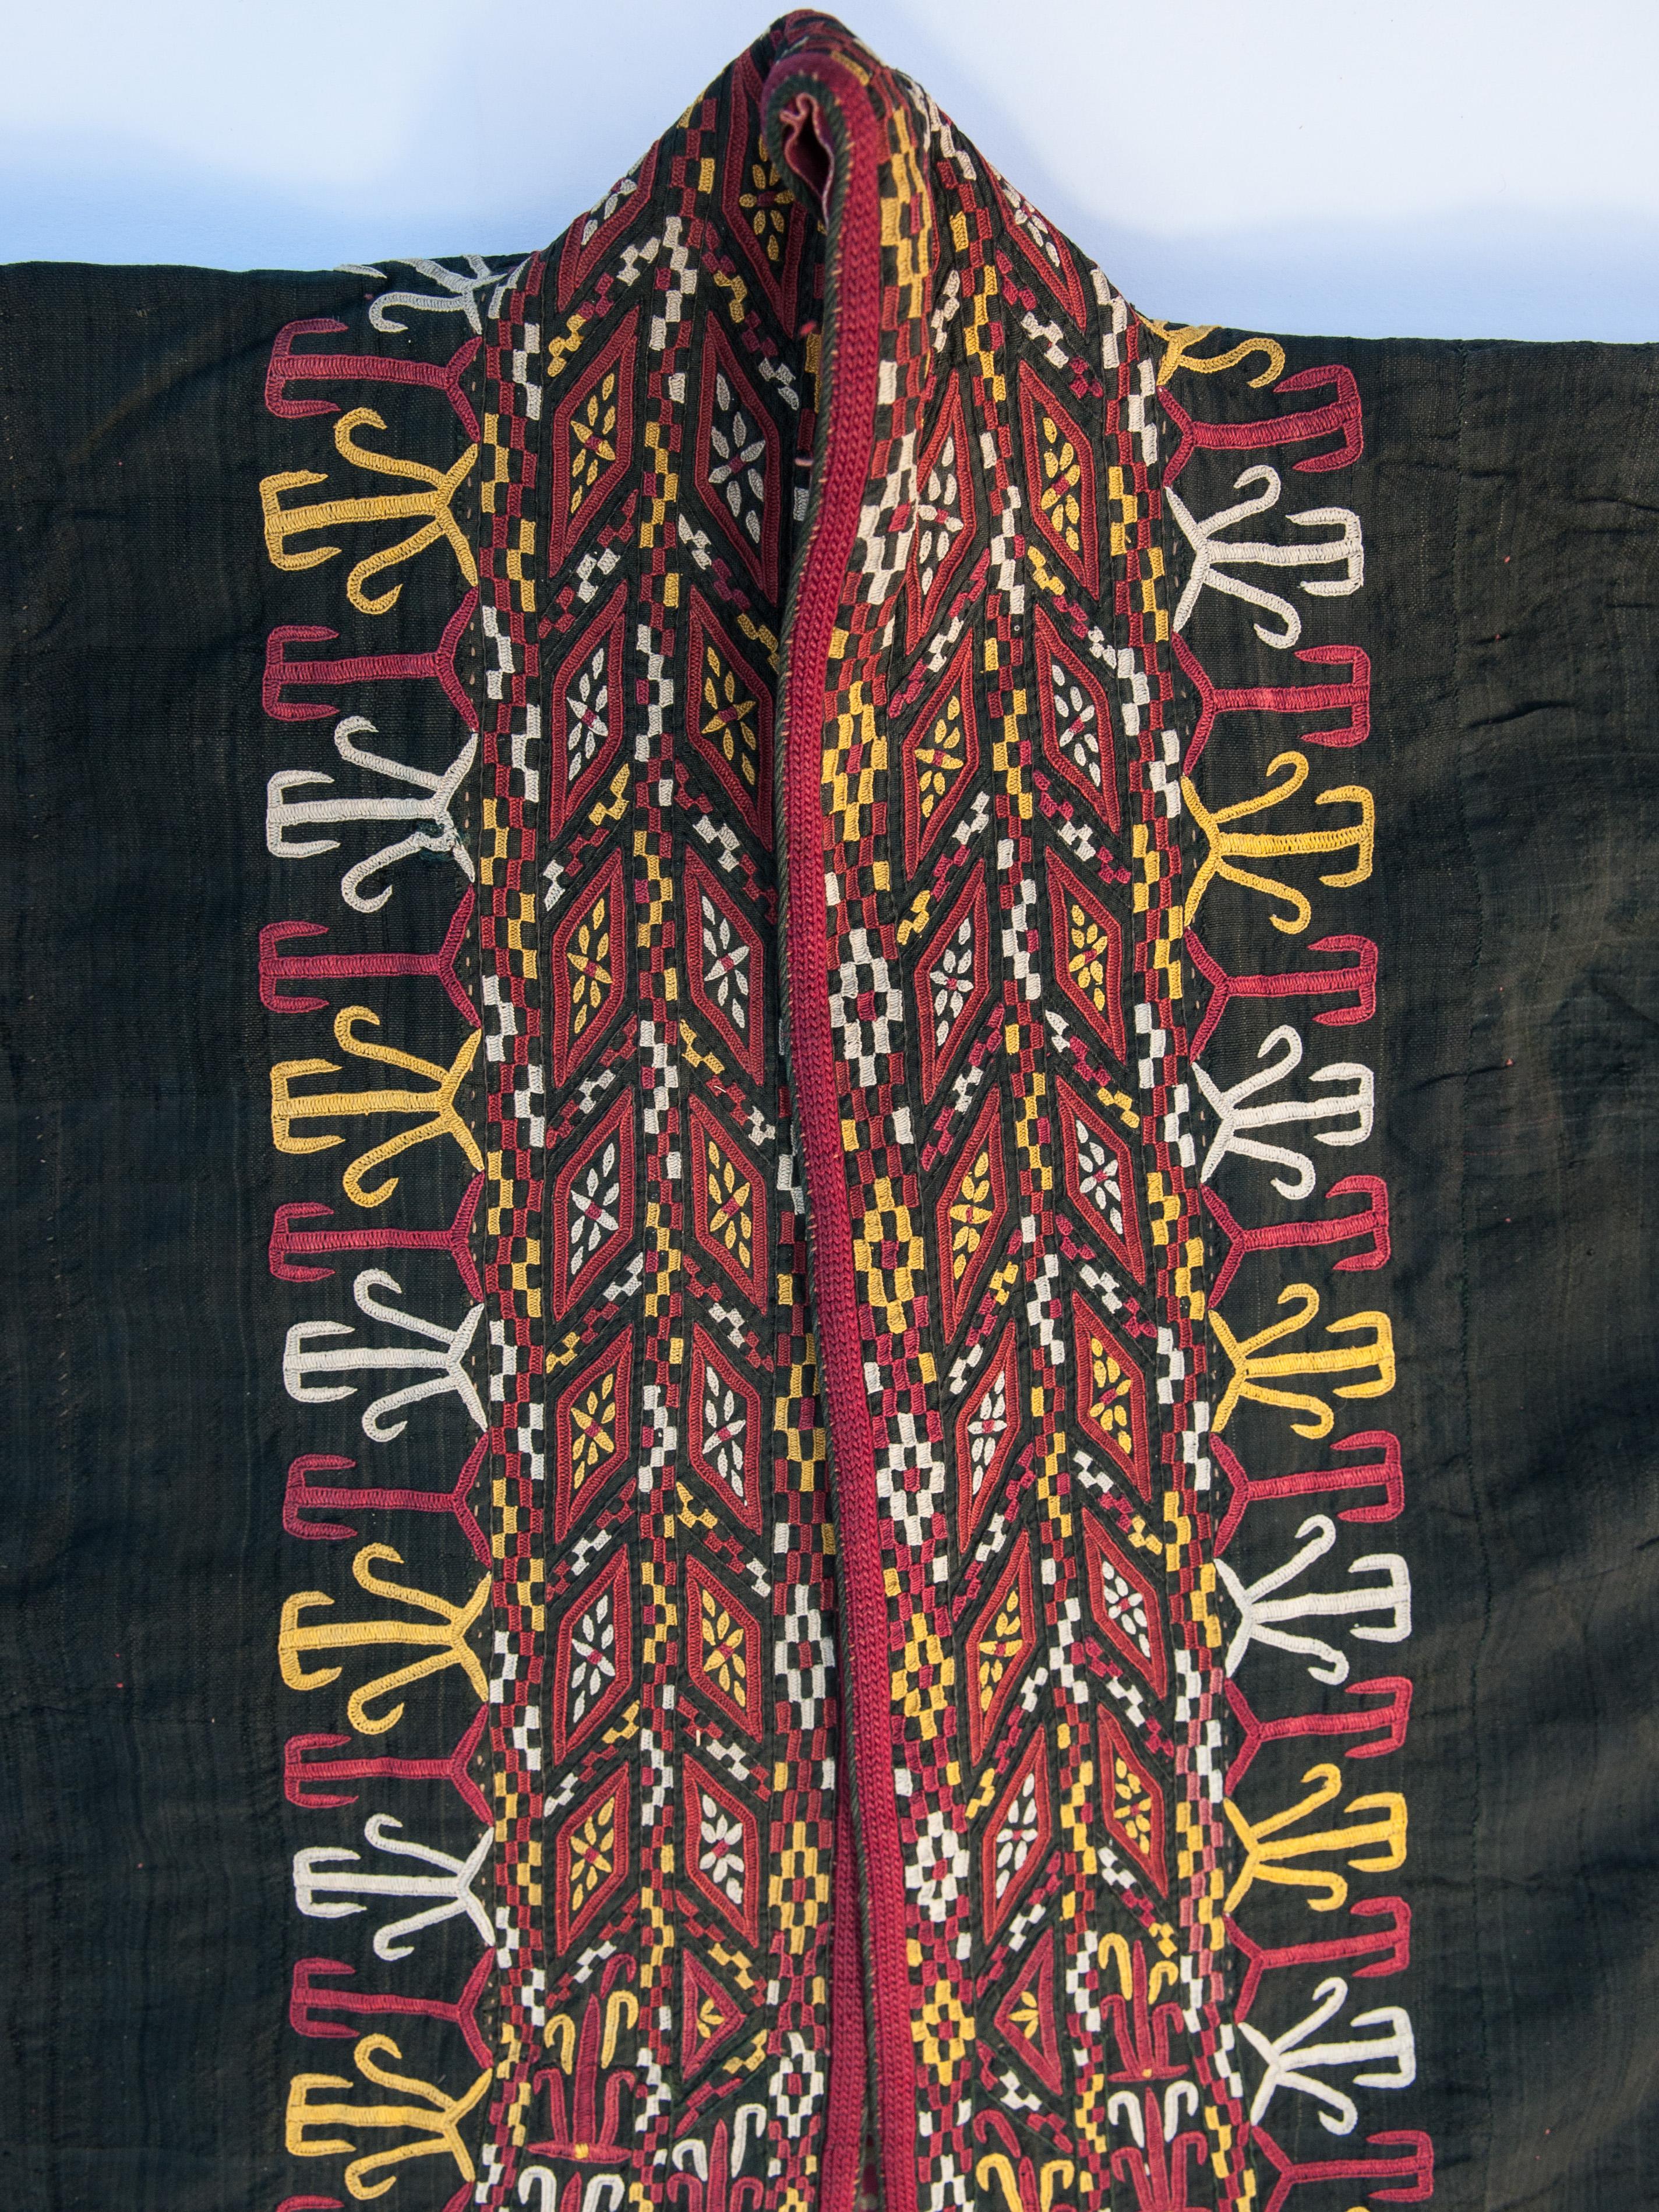 Tribal Vintage Women's Cloak / Jacket, Chyrpy, Tekke Turkman, Mid-Late 20th Century